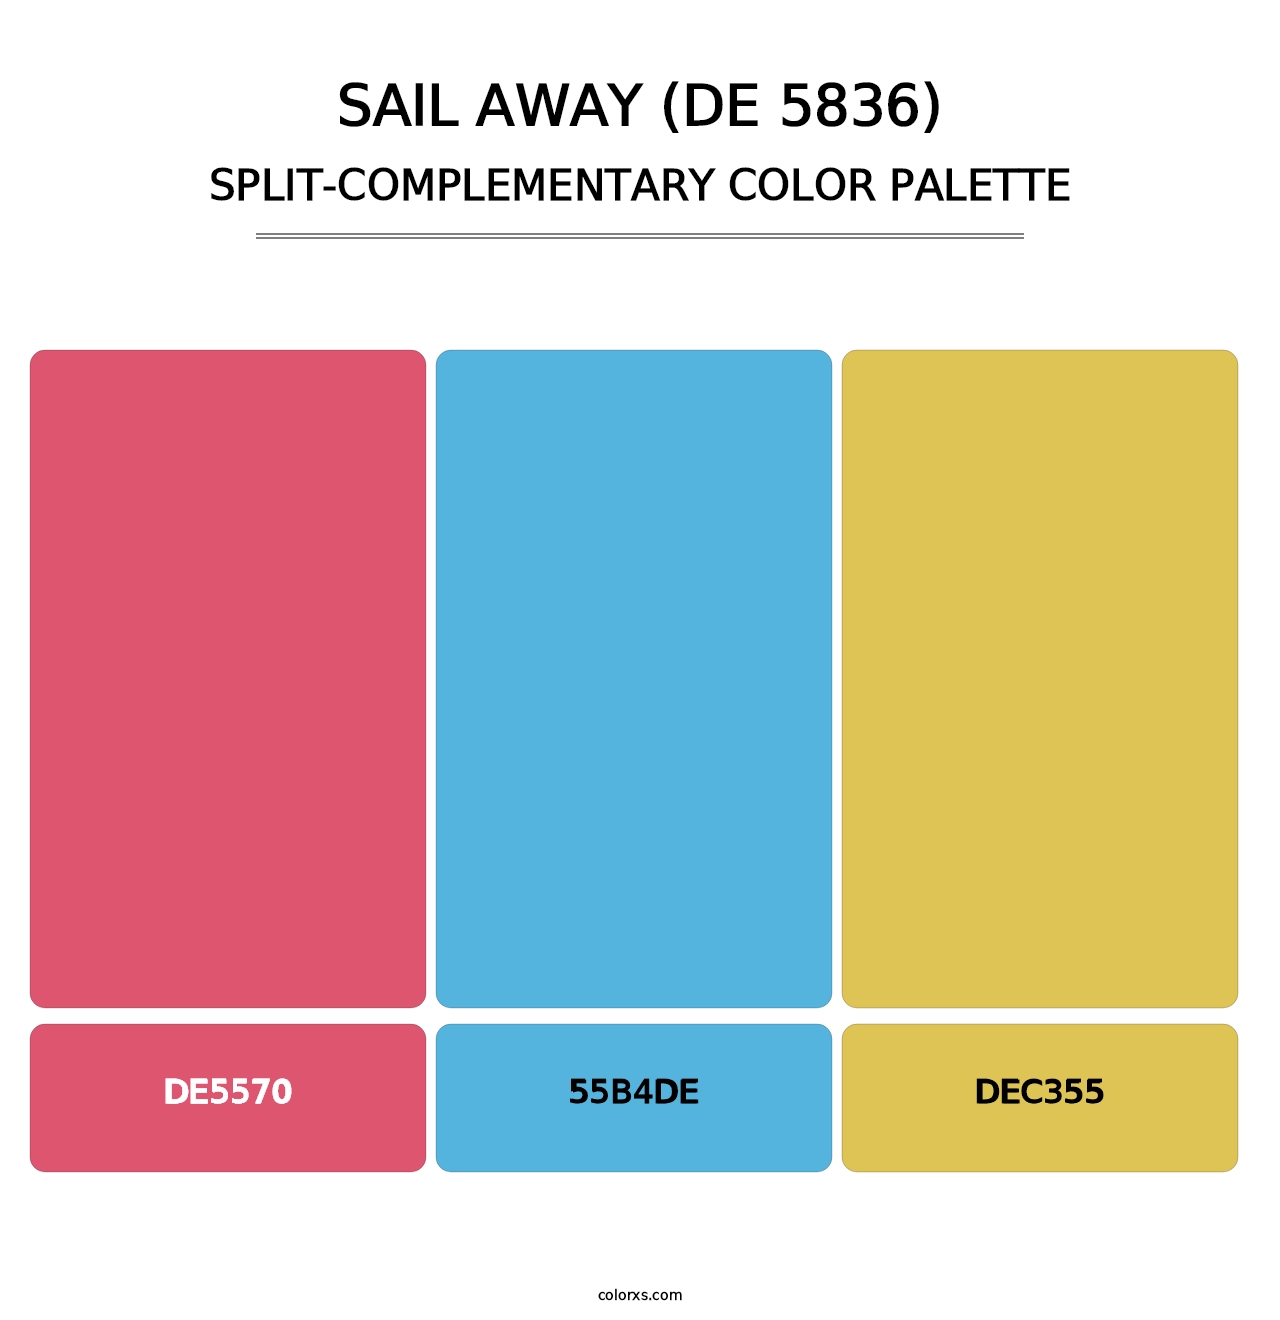 Sail Away (DE 5836) - Split-Complementary Color Palette